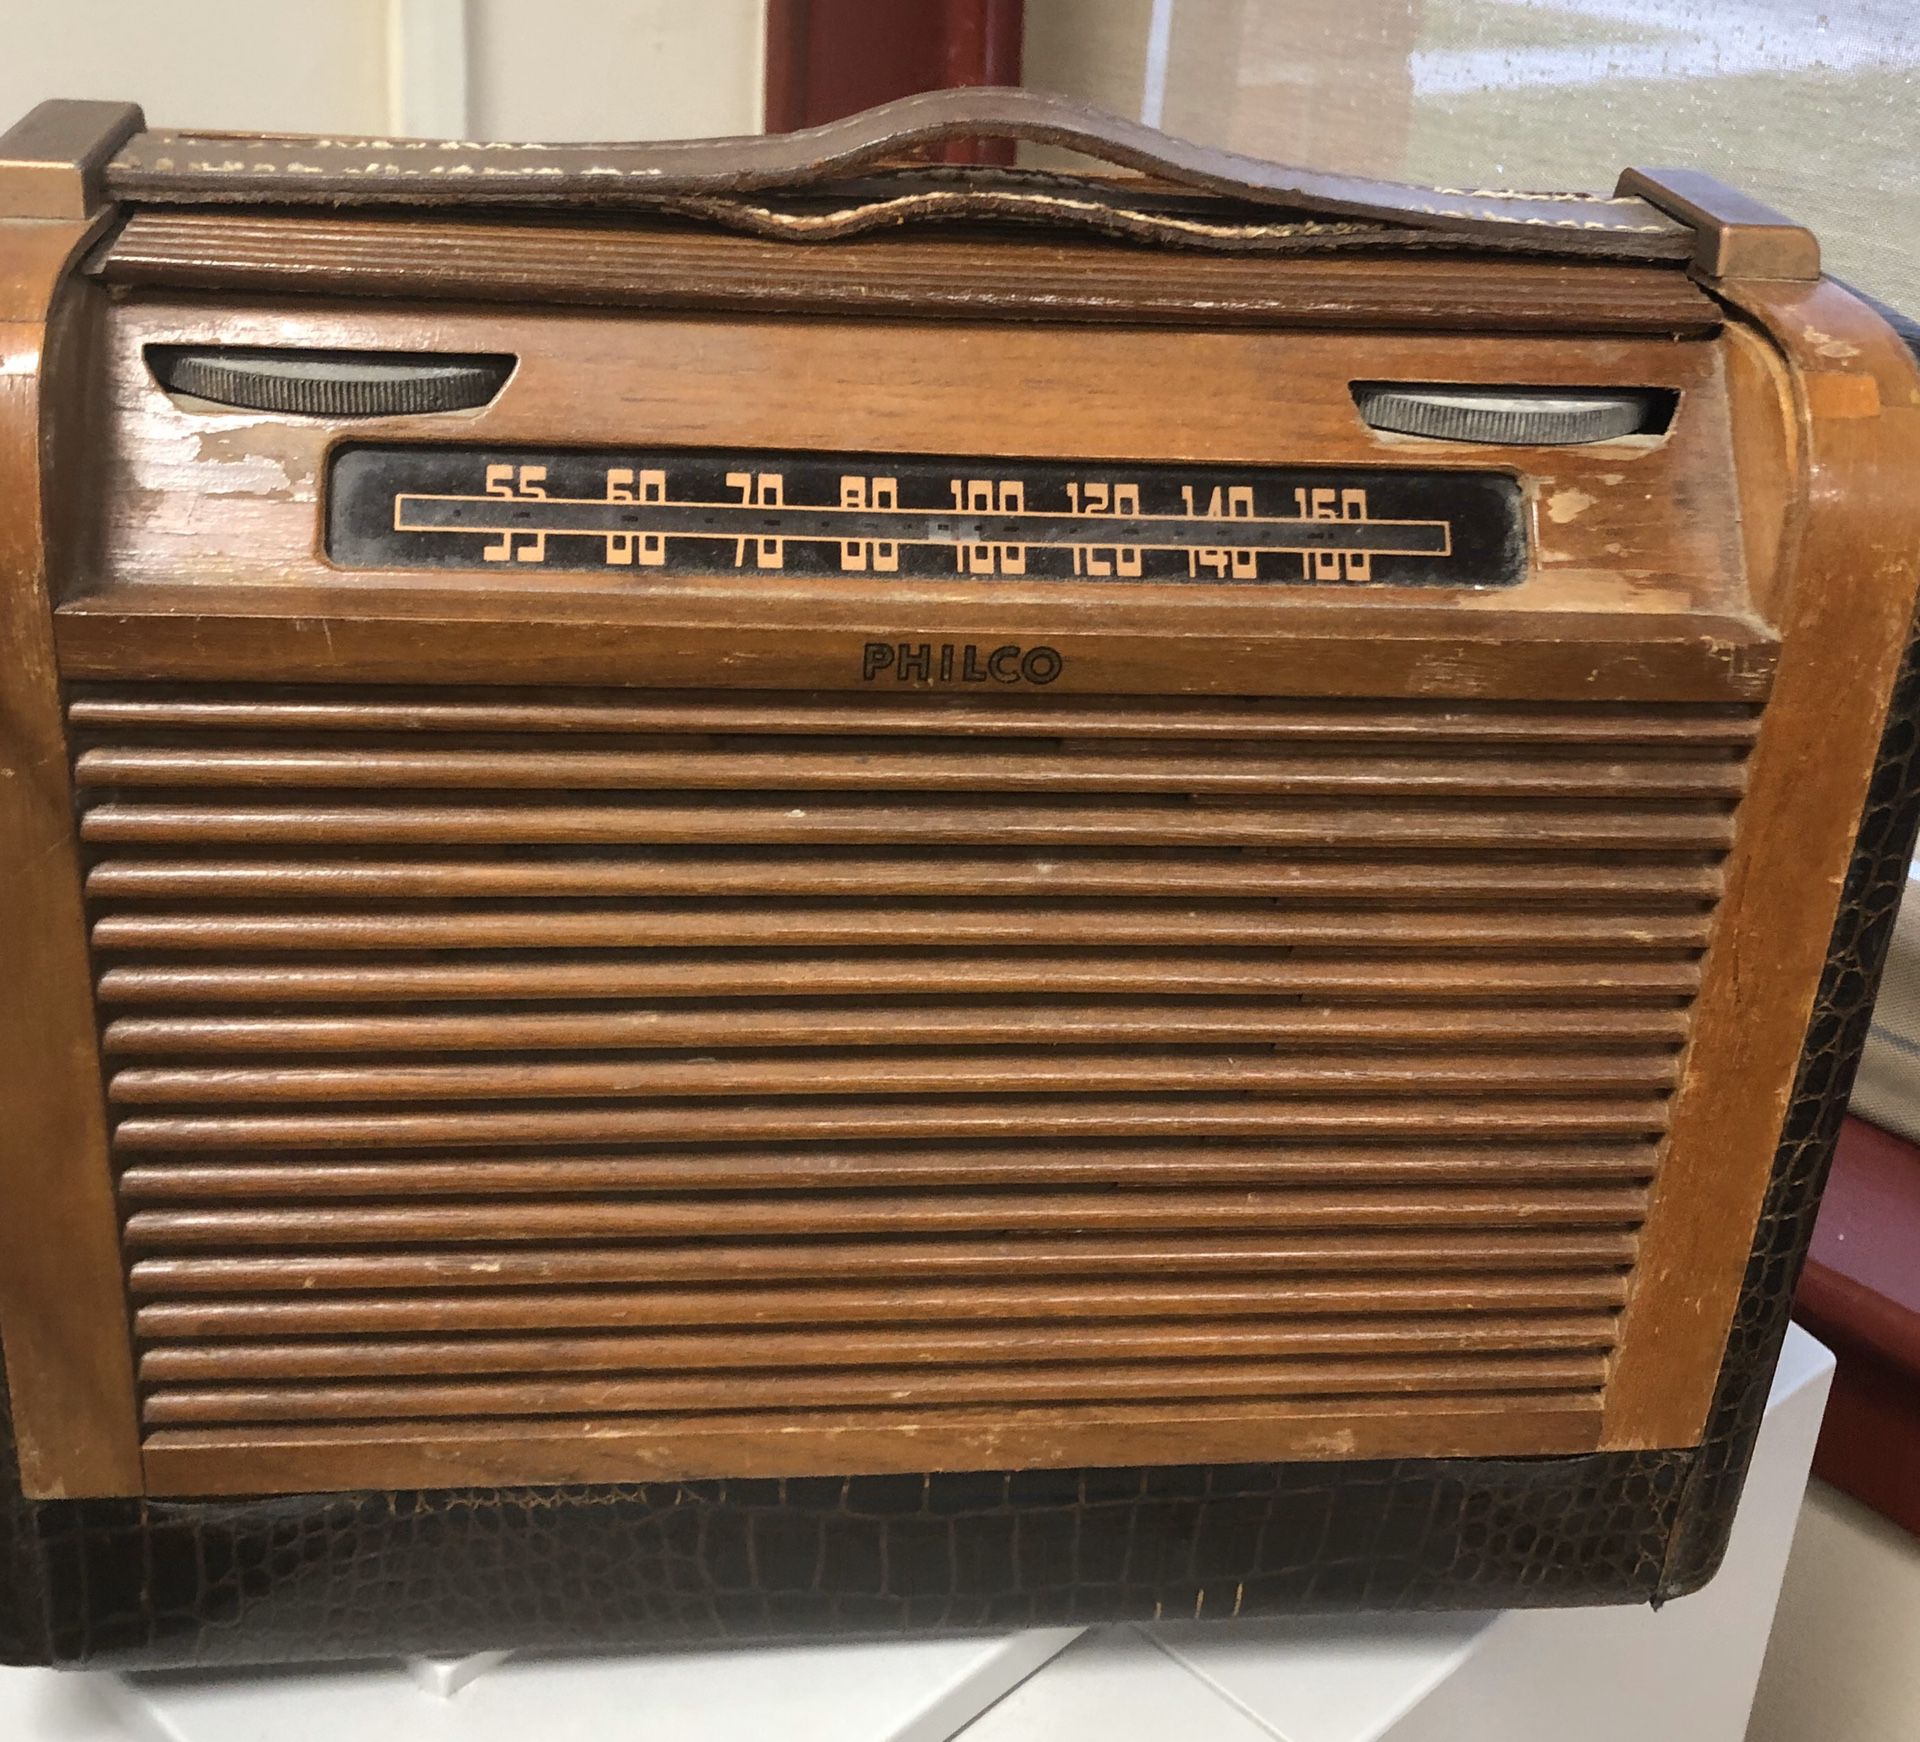 Antique radio philco 48-360 parts or repair